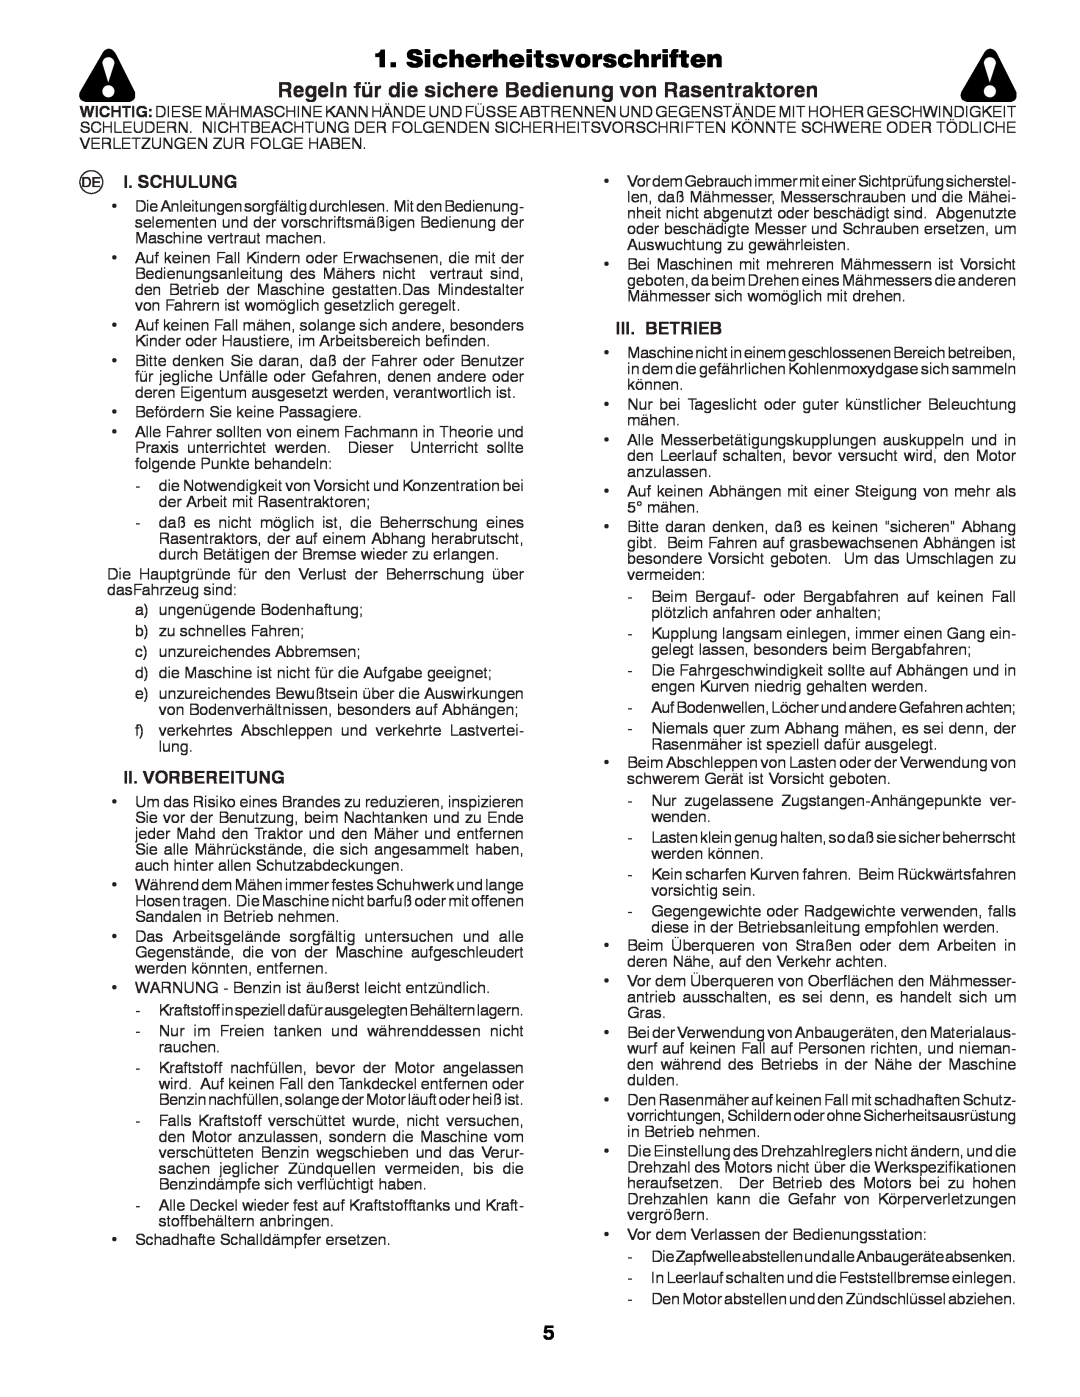 McCulloch LZ13597AK, UN15597SBK Sicherheitsvorschriften, Regeln für die sichere Bedienung von Rasentraktoren, I. Schulung 